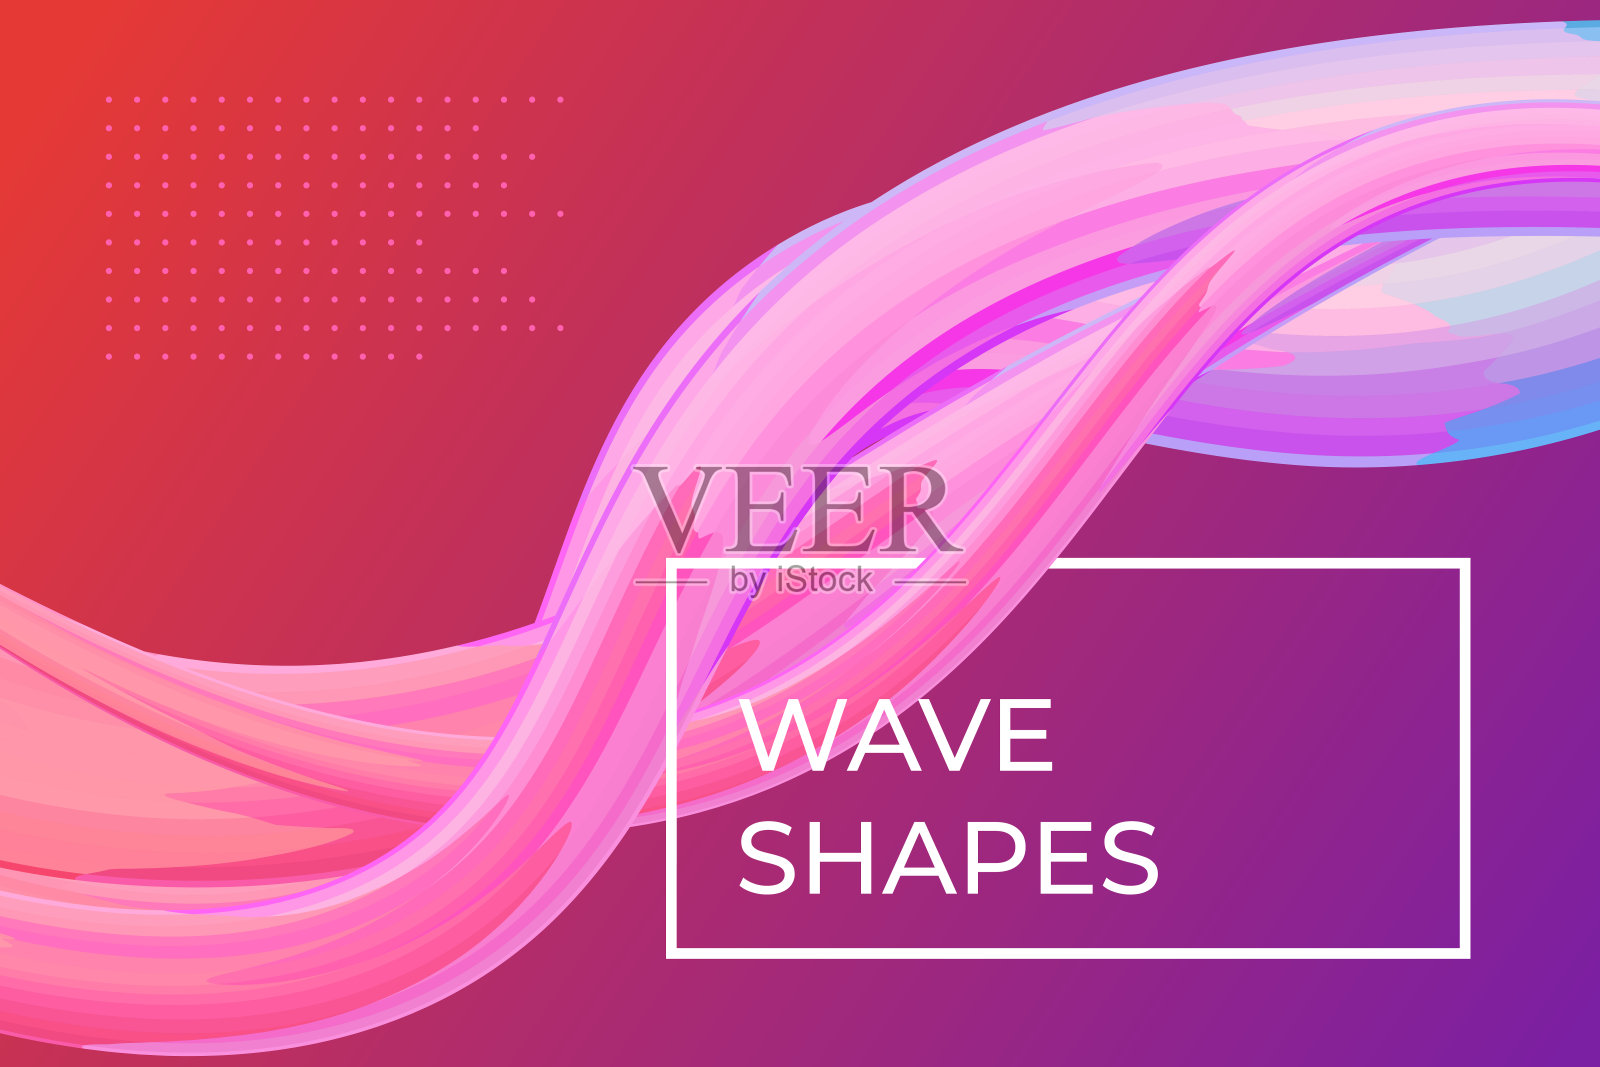 现代彩色动态流体流动海报模板。波浪液体形状在粉红色紫色的背景。设计项目的艺术设计。矢量抽象梯度图插画图片素材